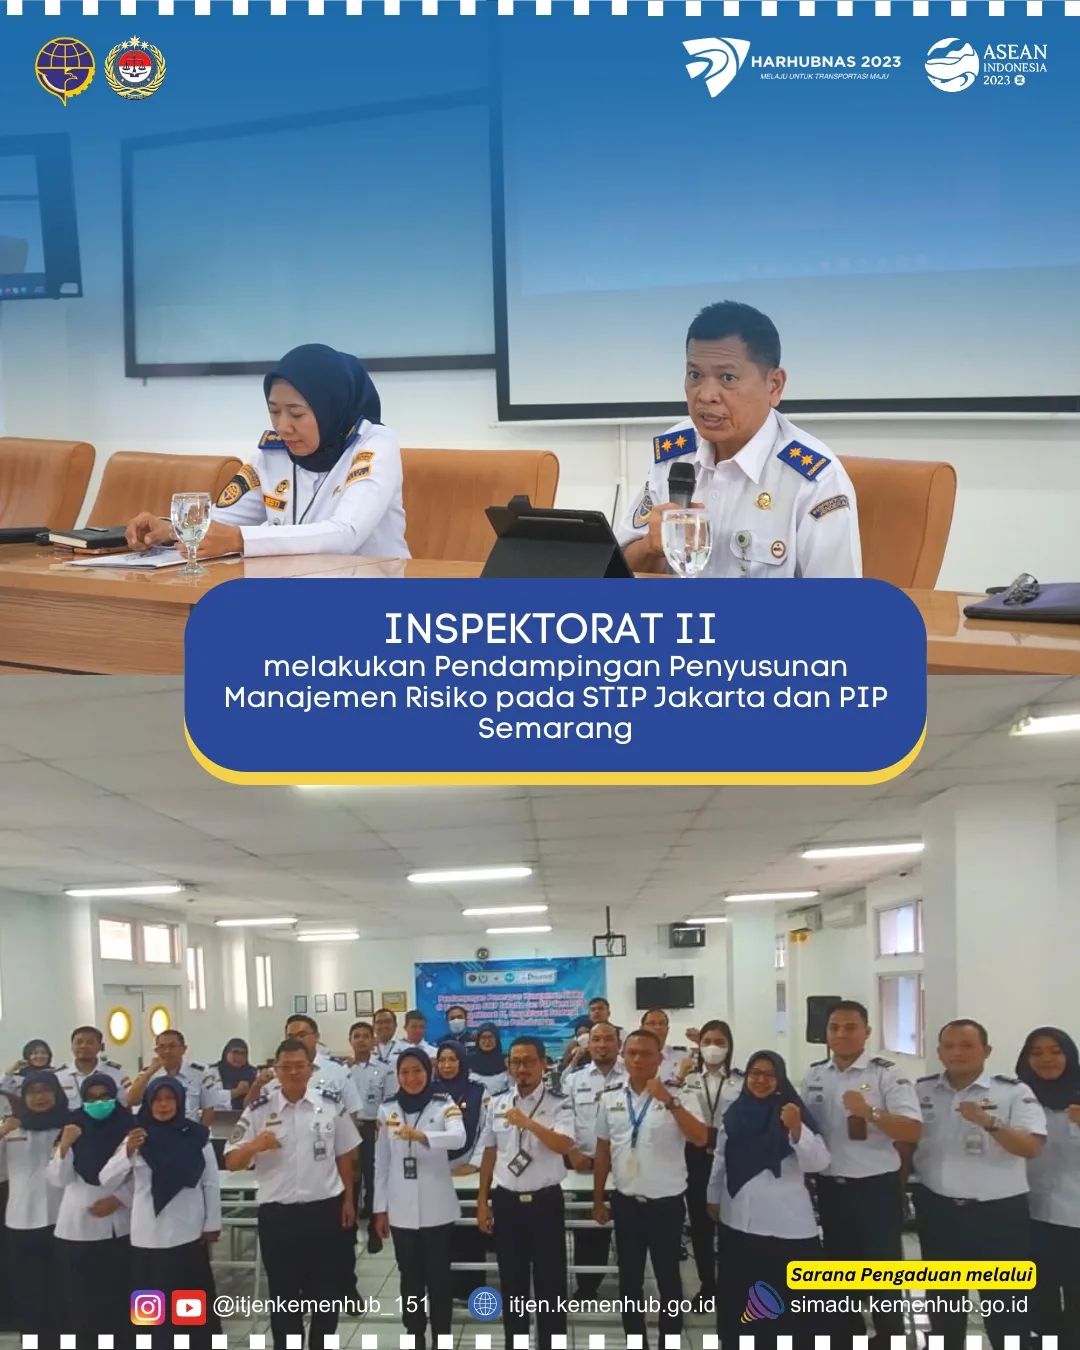 Inspektorat II Melakukan Pendampingan Penyusunan MR pada STIP Jakarta dan PIP Semarang